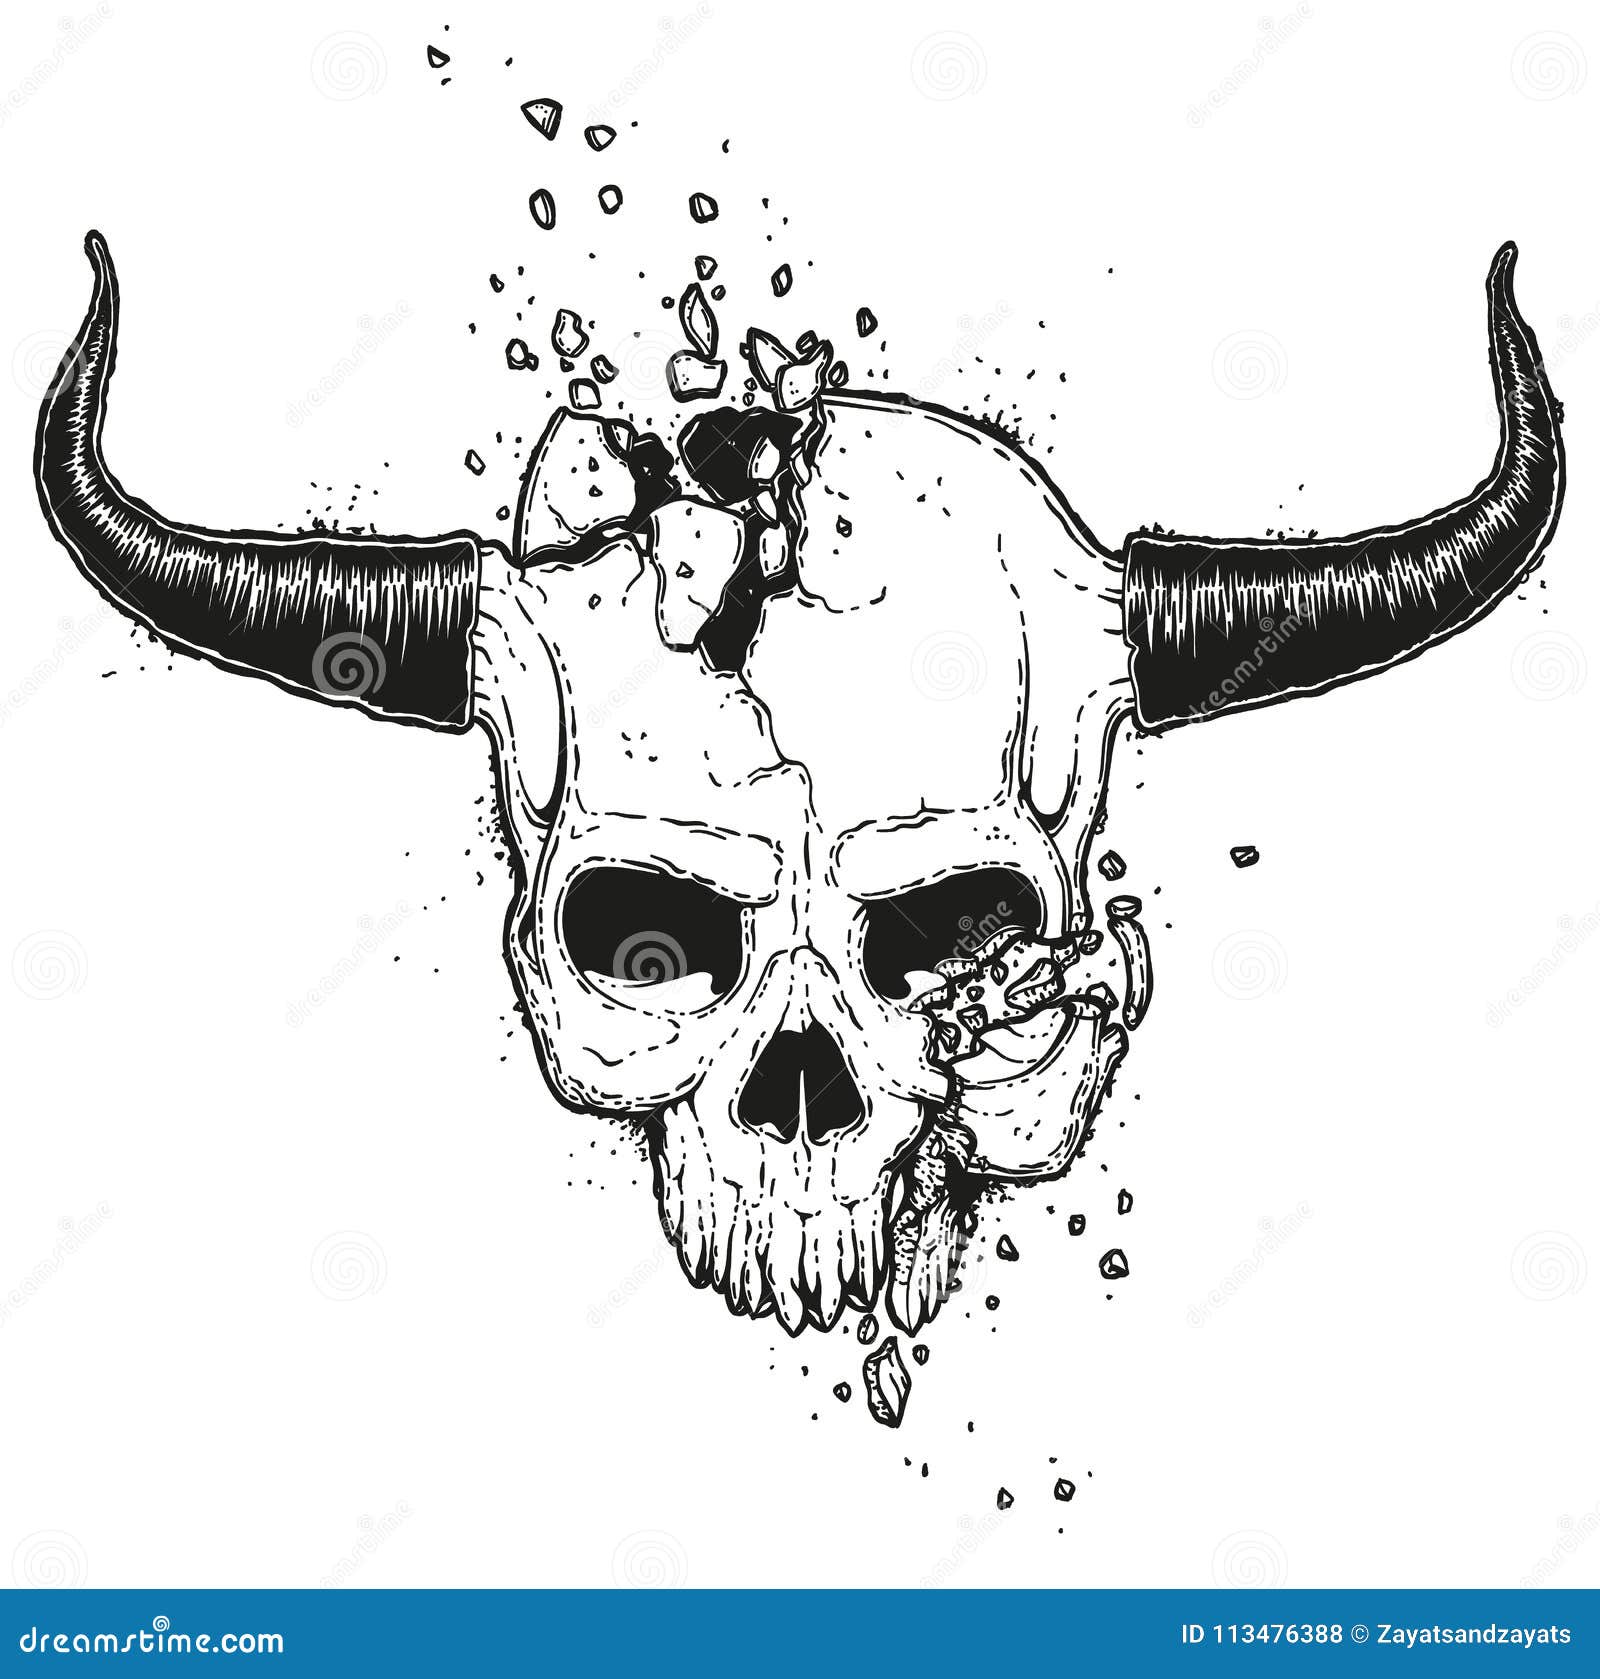 crânio do diabo com ilustração de chifre quebrado. gráficos